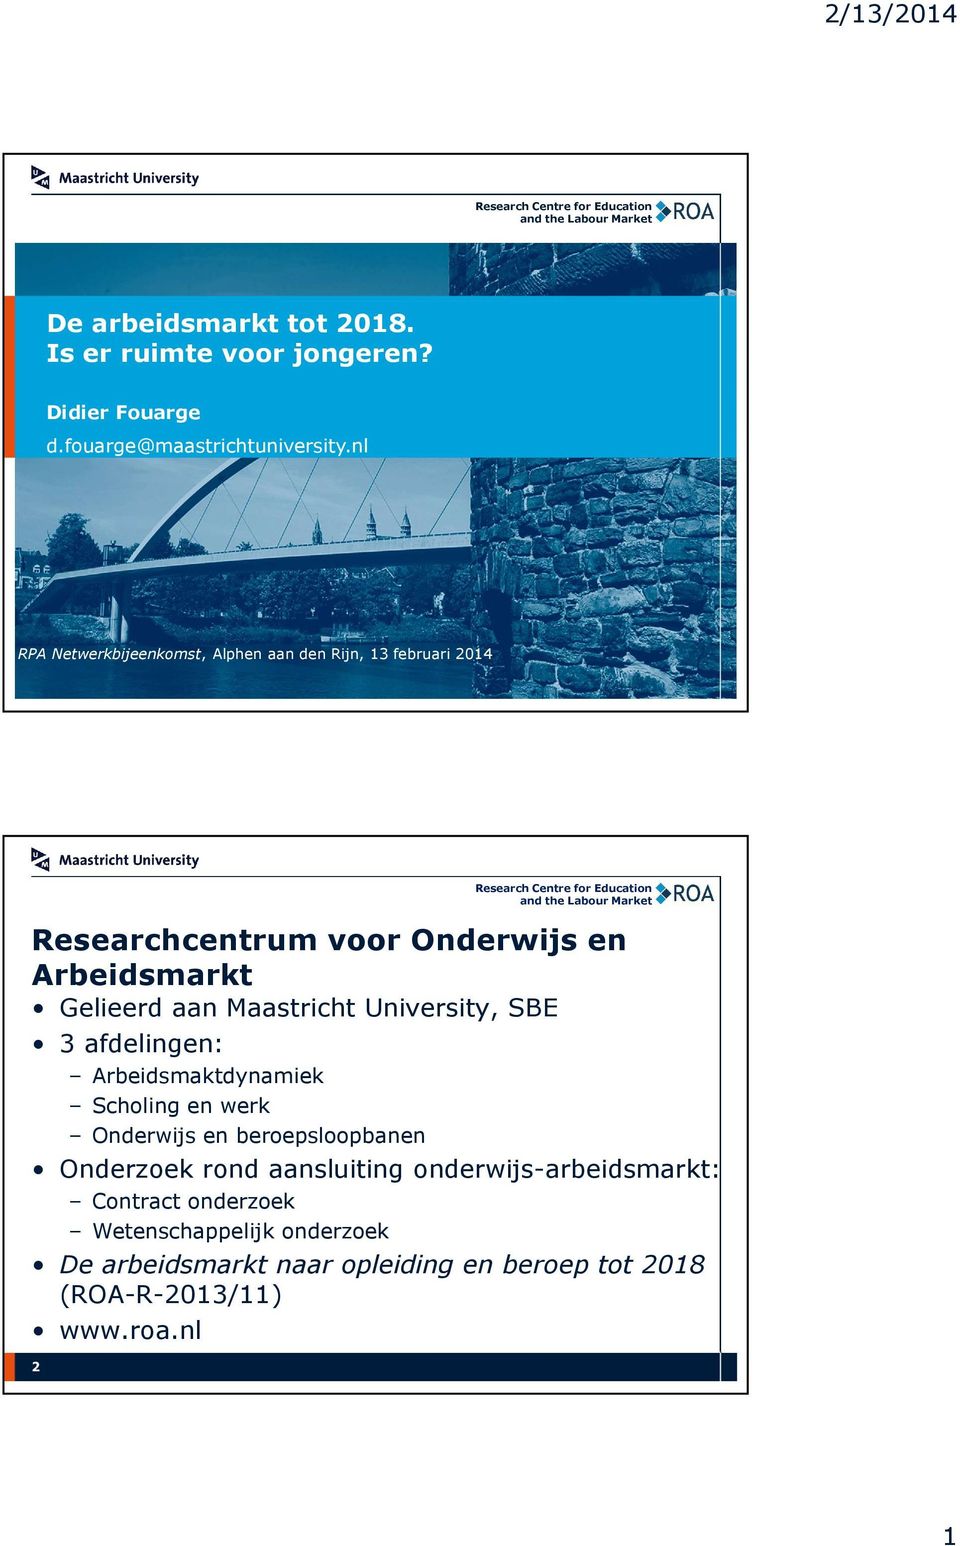 Maastricht University, SBE 3 afdelingen: Arbeidsmaktdynamiek Scholing en werk Onderwijs en beroepsloopbanen Onderzoek rond